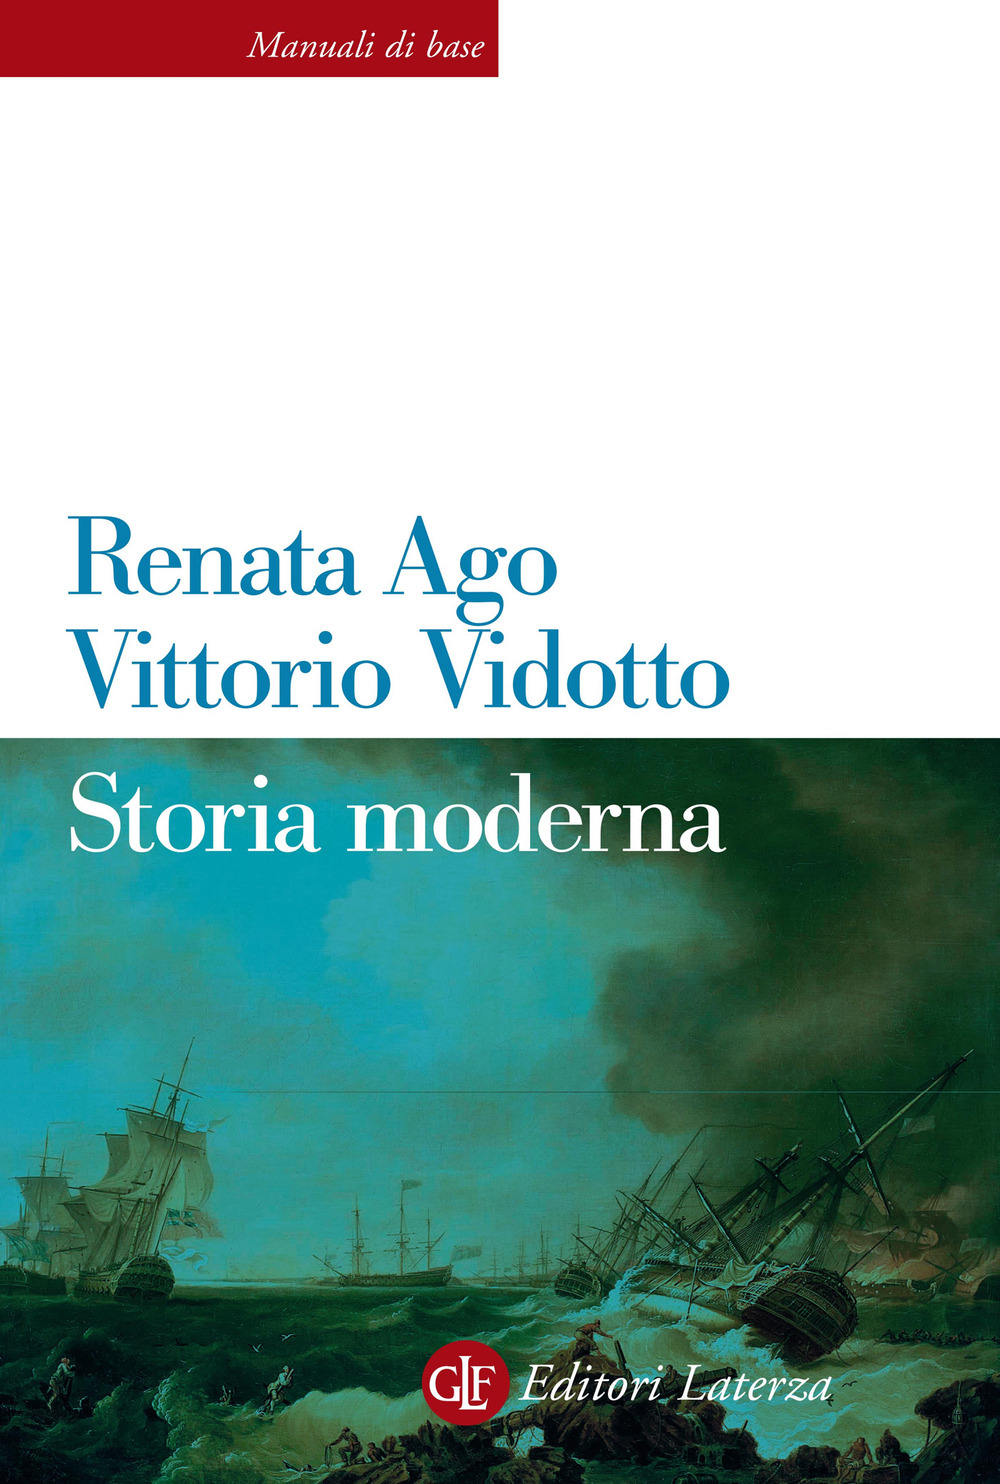 Libri Renata Ago / Vittorio Vidotto - Storia Moderna NUOVO SIGILLATO, EDIZIONE DEL 04/02/2021 SUBITO DISPONIBILE